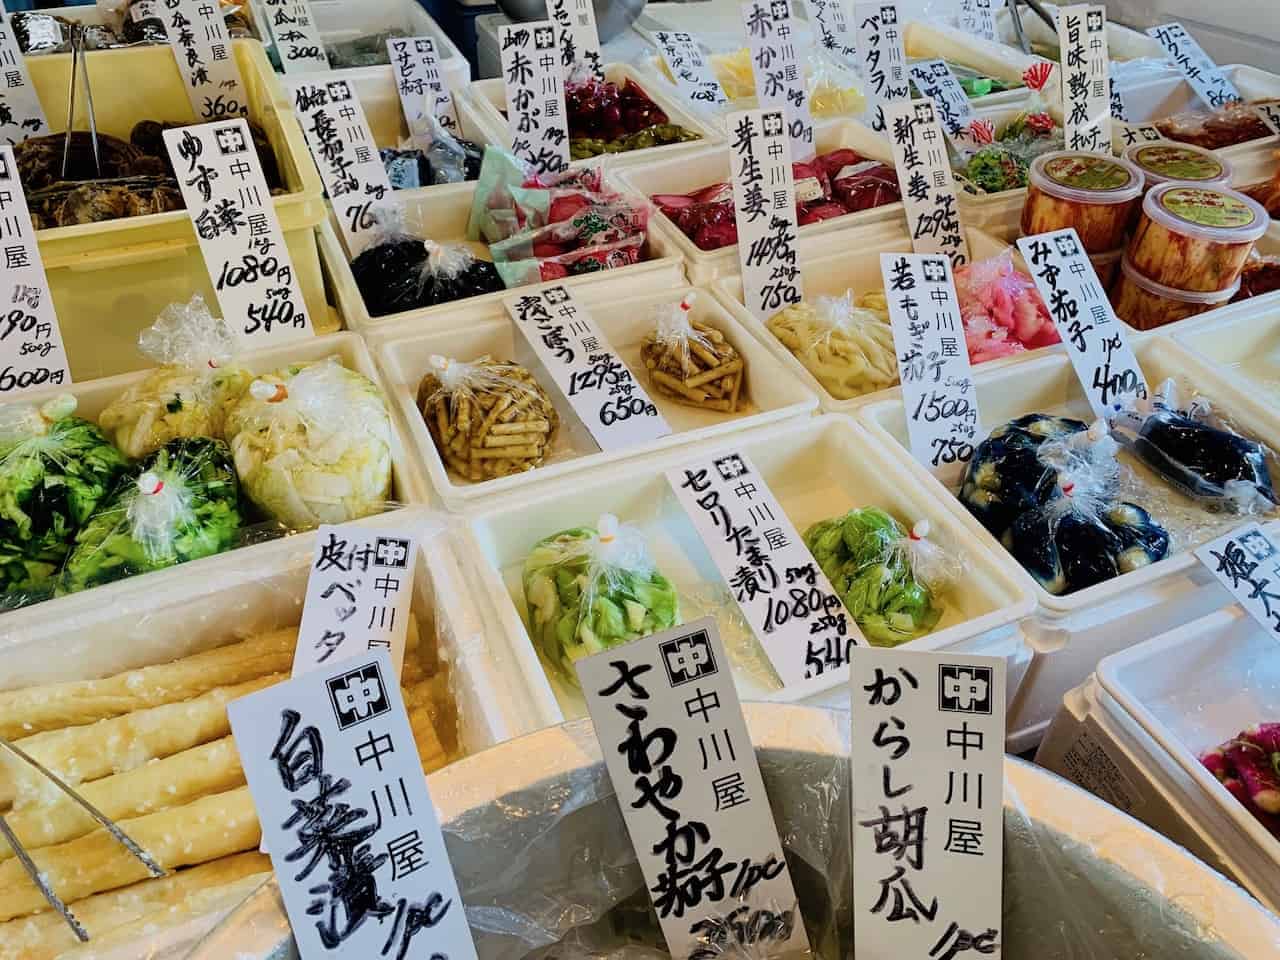 Tsujiki Market Food